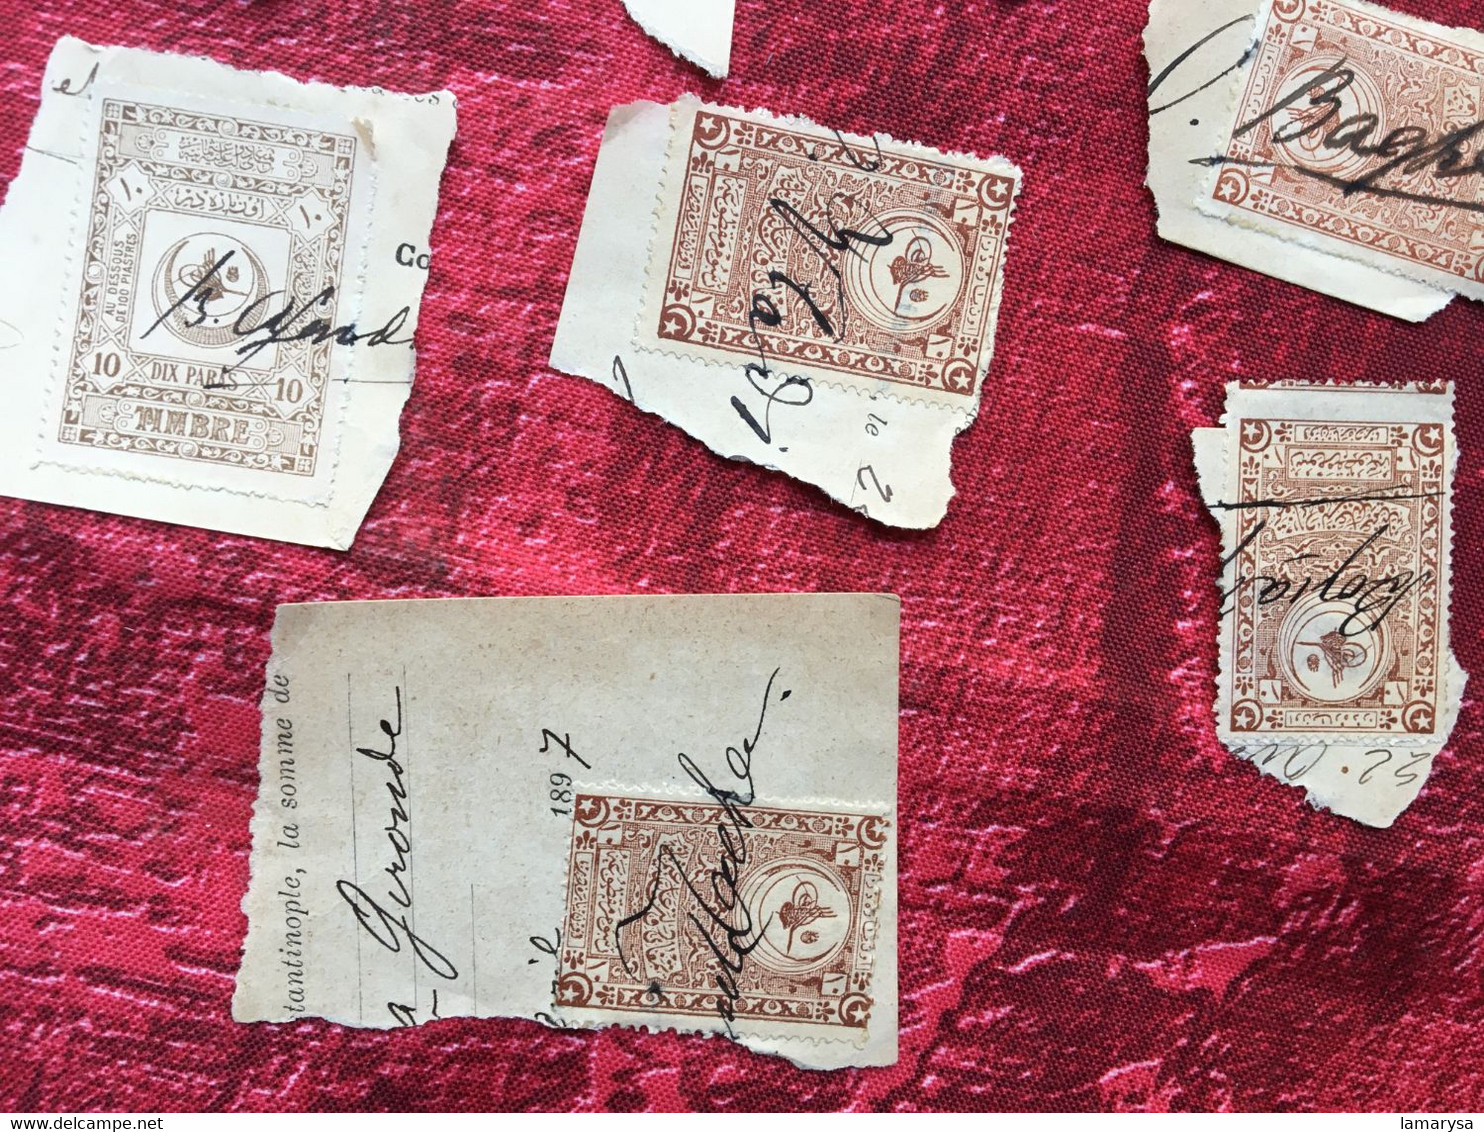 CILICIE(1897)TURQUIE Constantinople(ex-protectorat français)Fiscal Fiscaux Timbre Turc 24 timbres fragment annulés plume